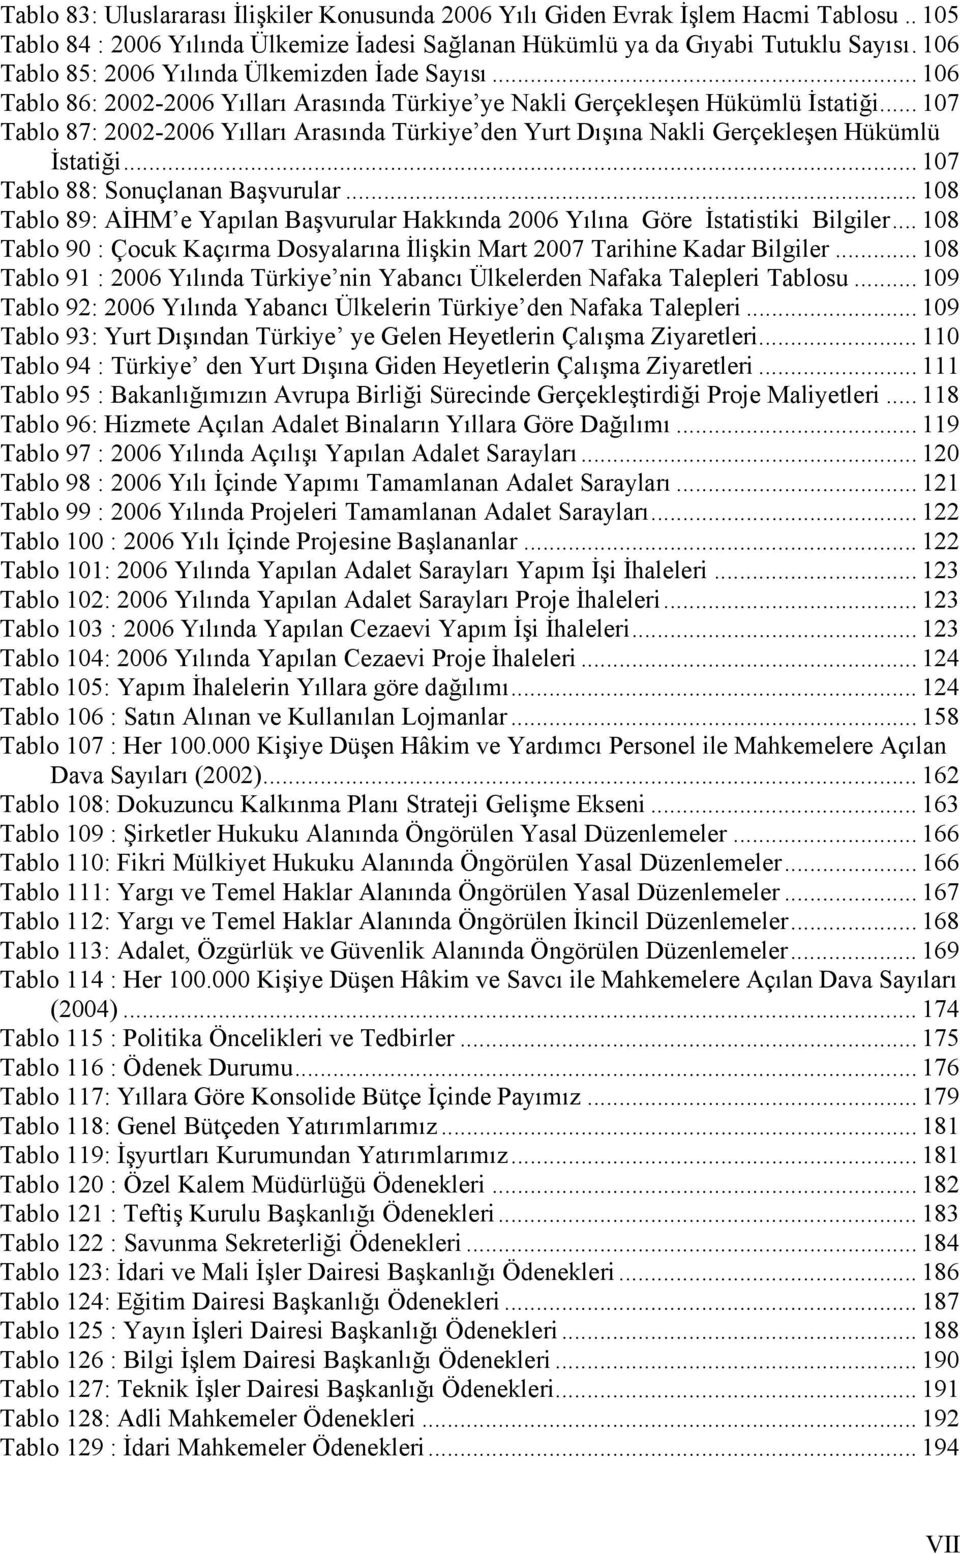 .. 107 Tablo 87: 2002-2006 Yılları Arasında Türkiye den Yurt Dışına Nakli Gerçekleşen Hükümlü İstatiği... 107 Tablo 88: Sonuçlanan Başvurular.